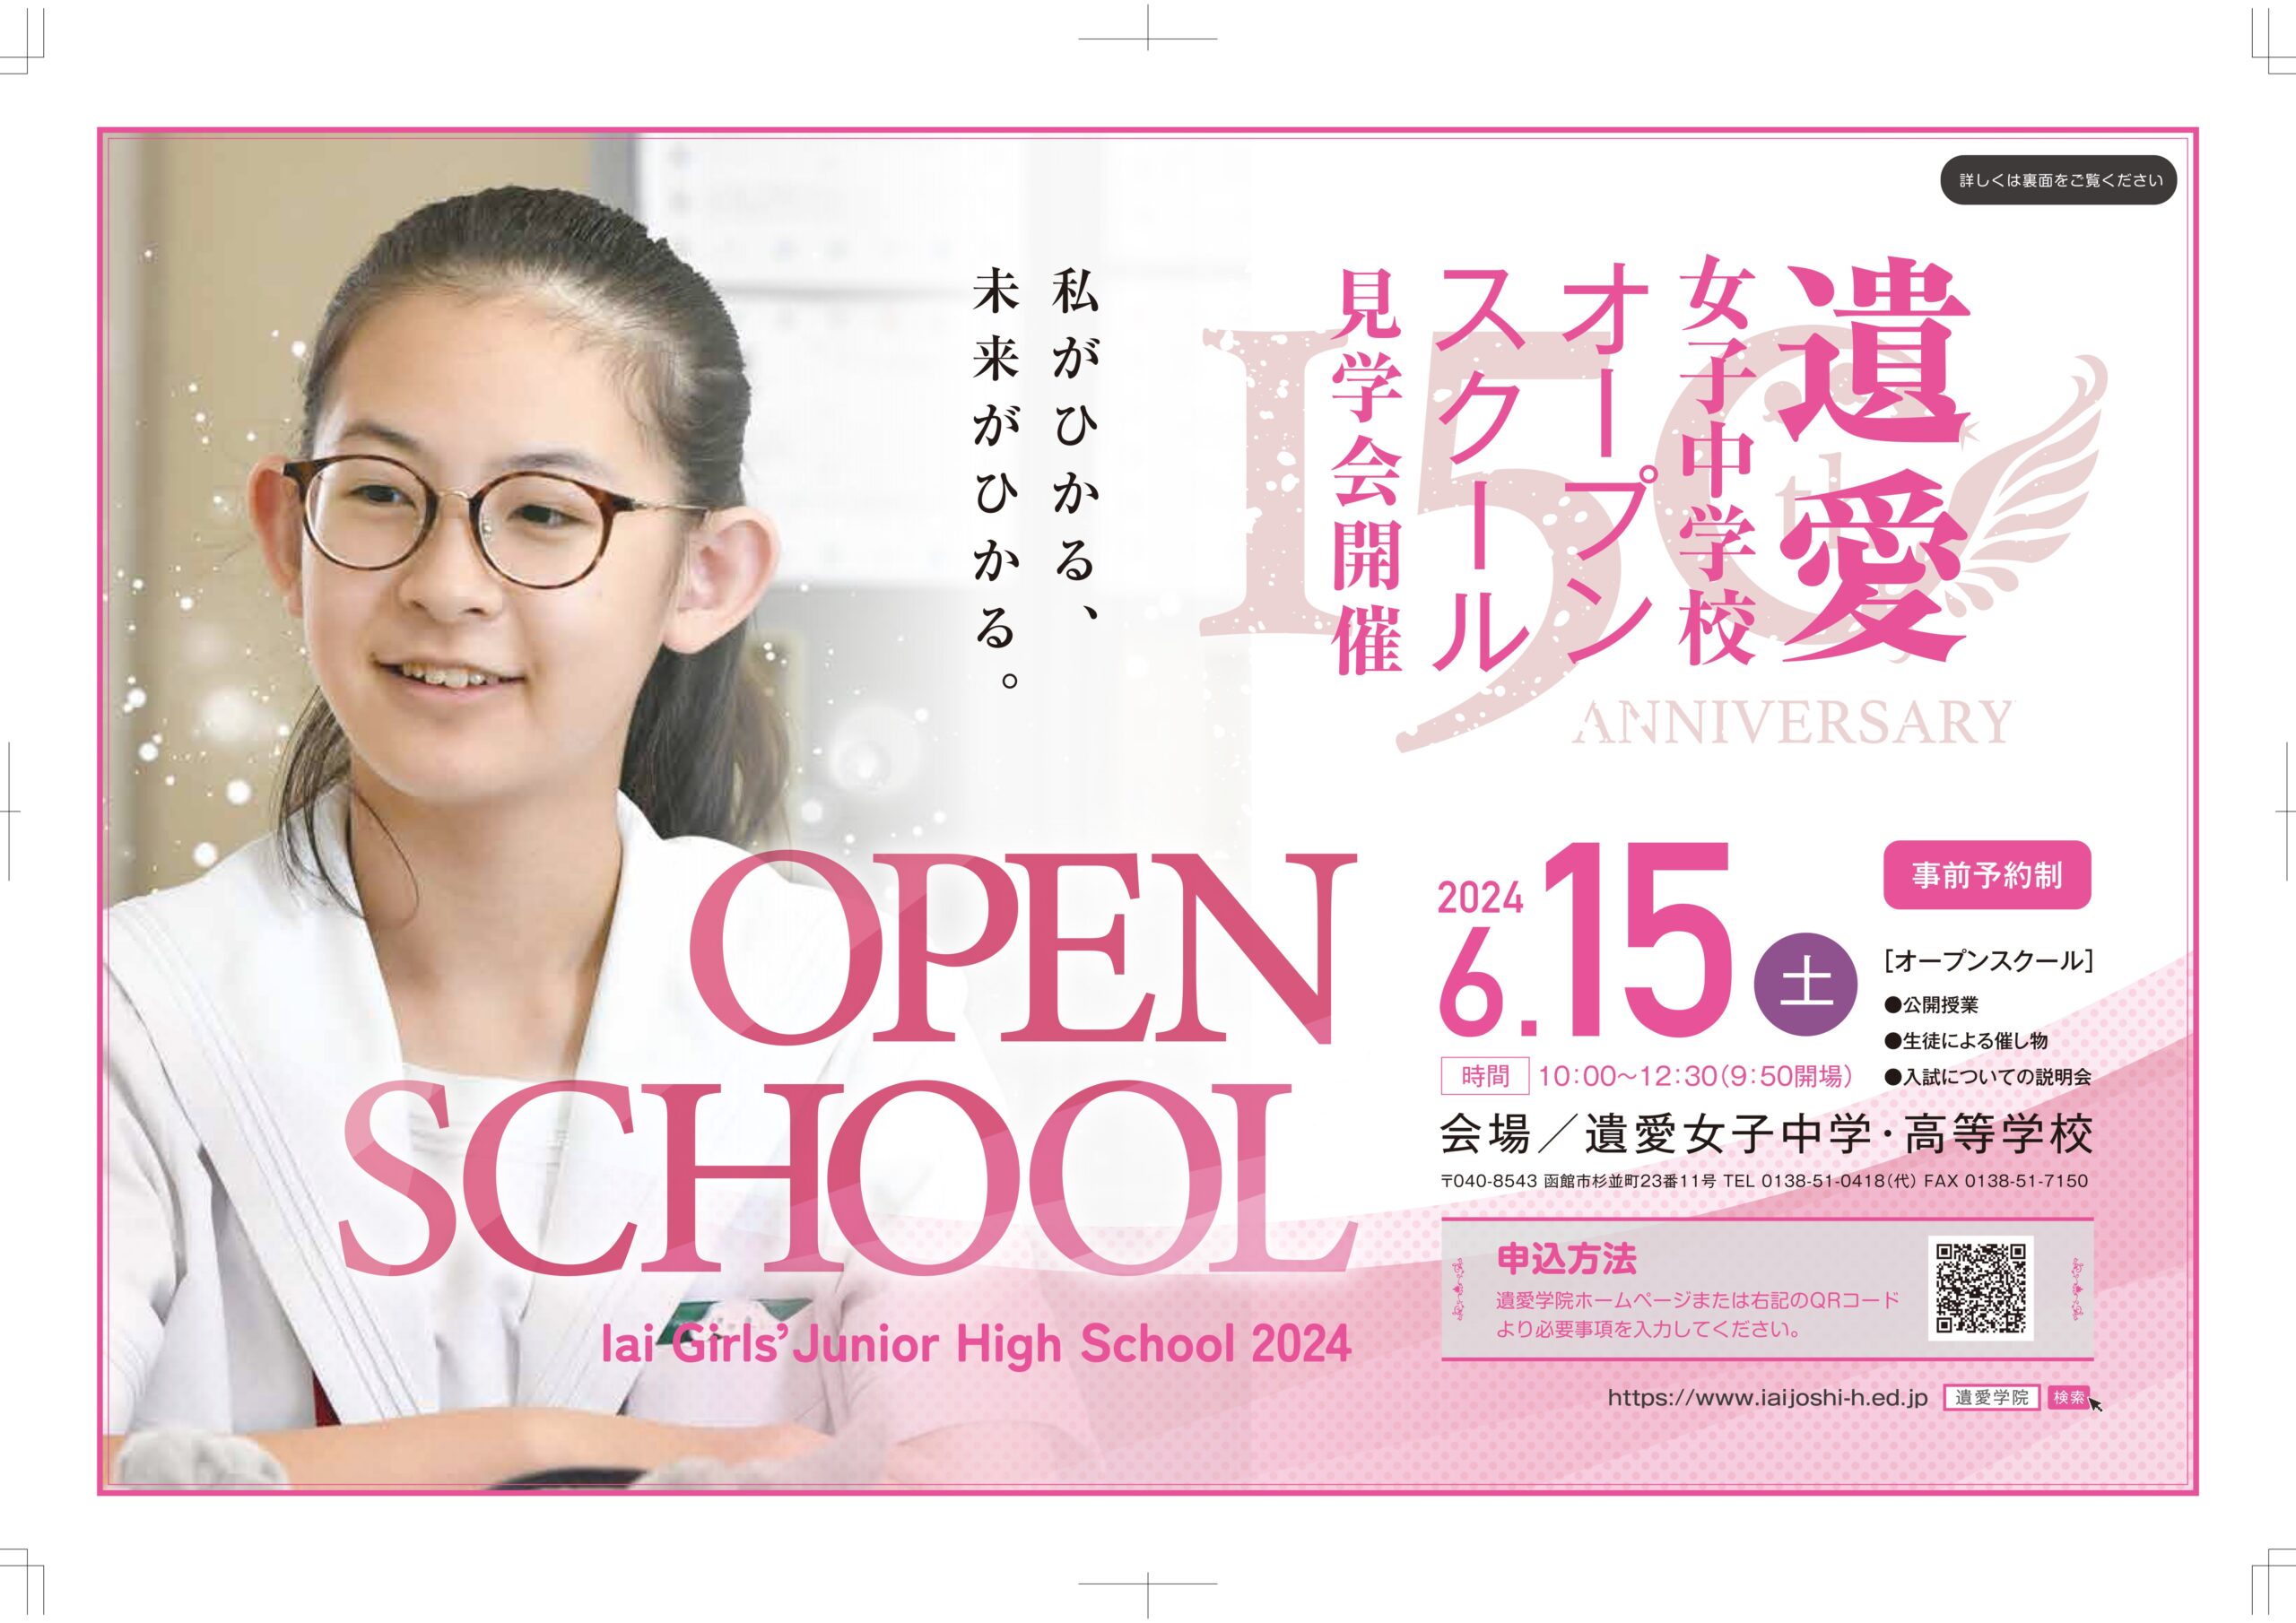 遺愛女子中学校オープンスクール申し込み受付中です‼️6月15日（土）10時より開催いたします。